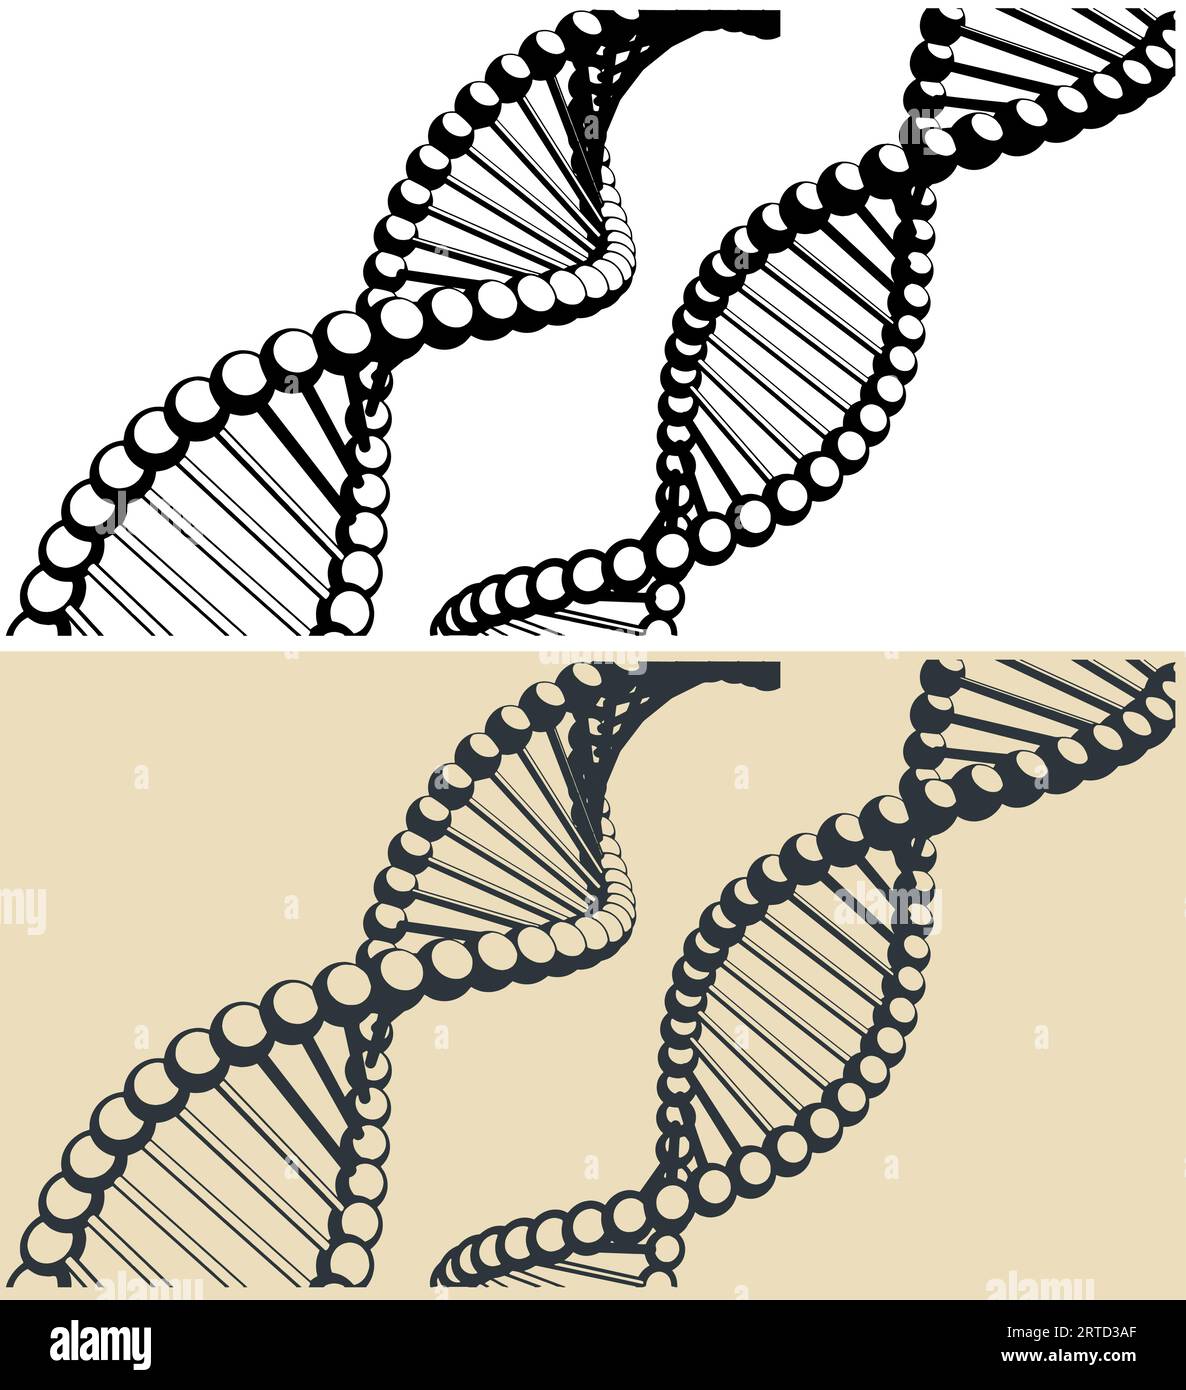 Illustrazioni vettoriali stilizzate delle catene di DNA Illustrazione Vettoriale